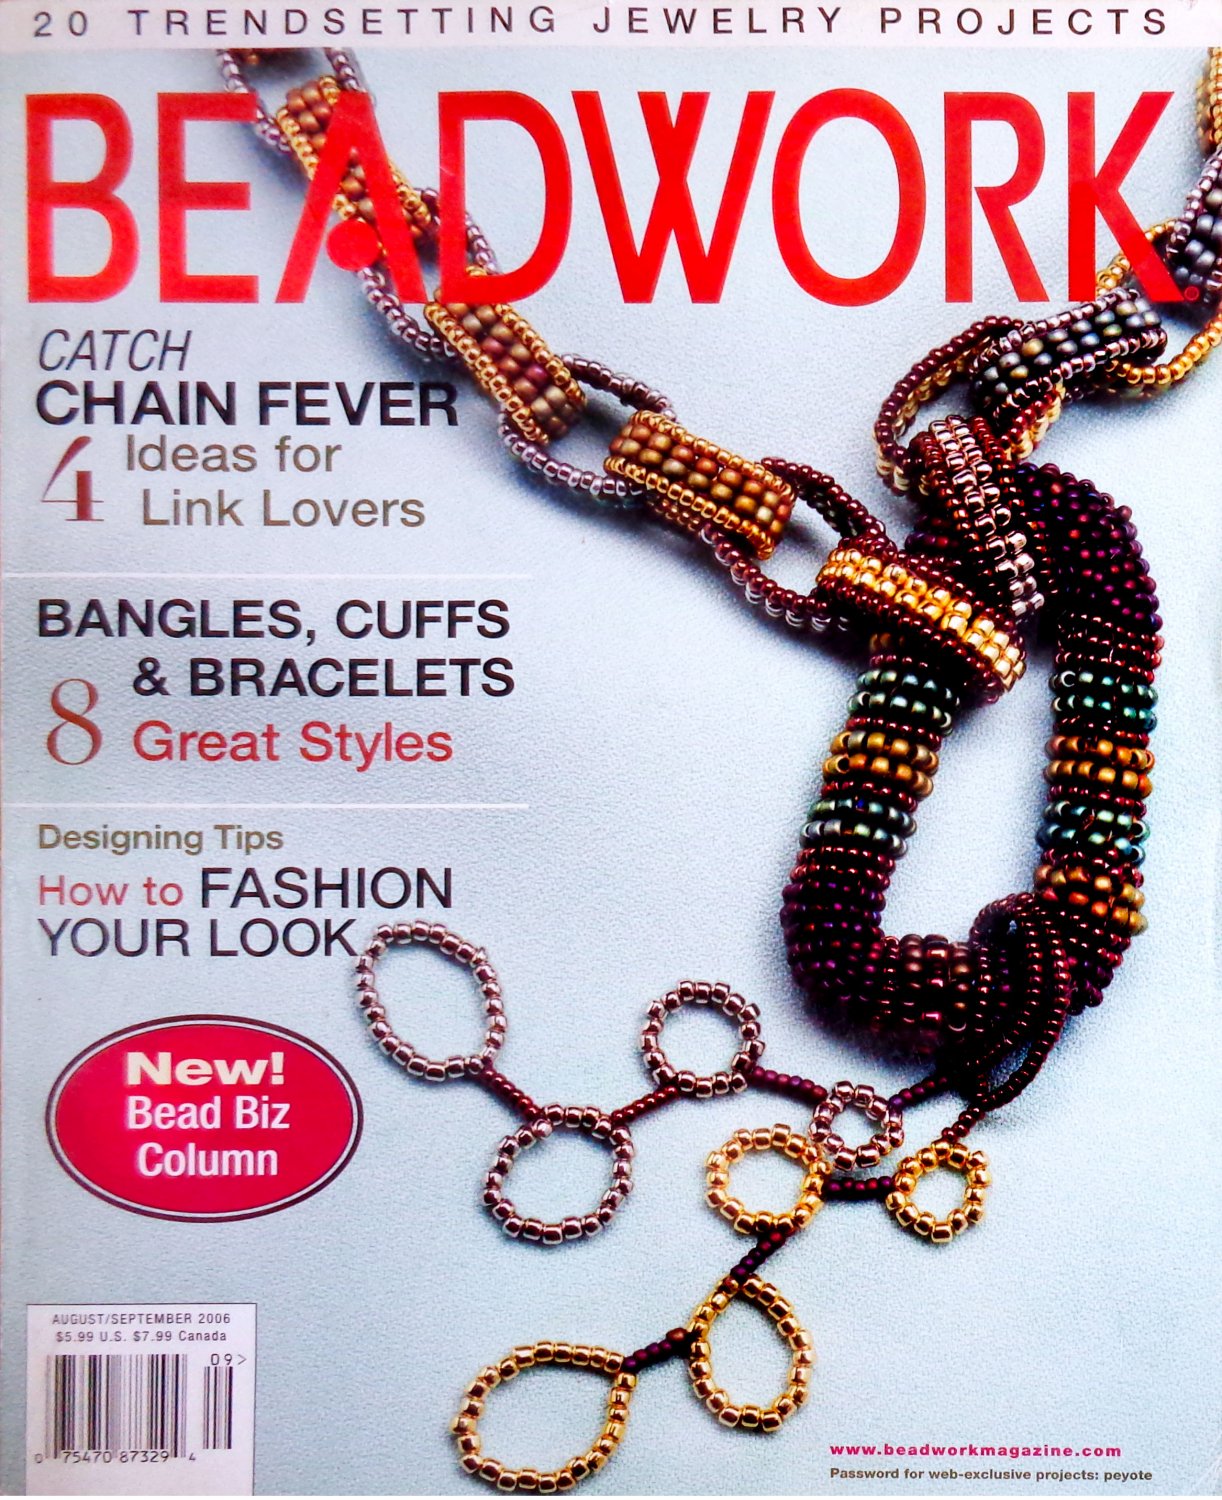 Beadwork Magazine August/September 2006 Volume 9 Number 5